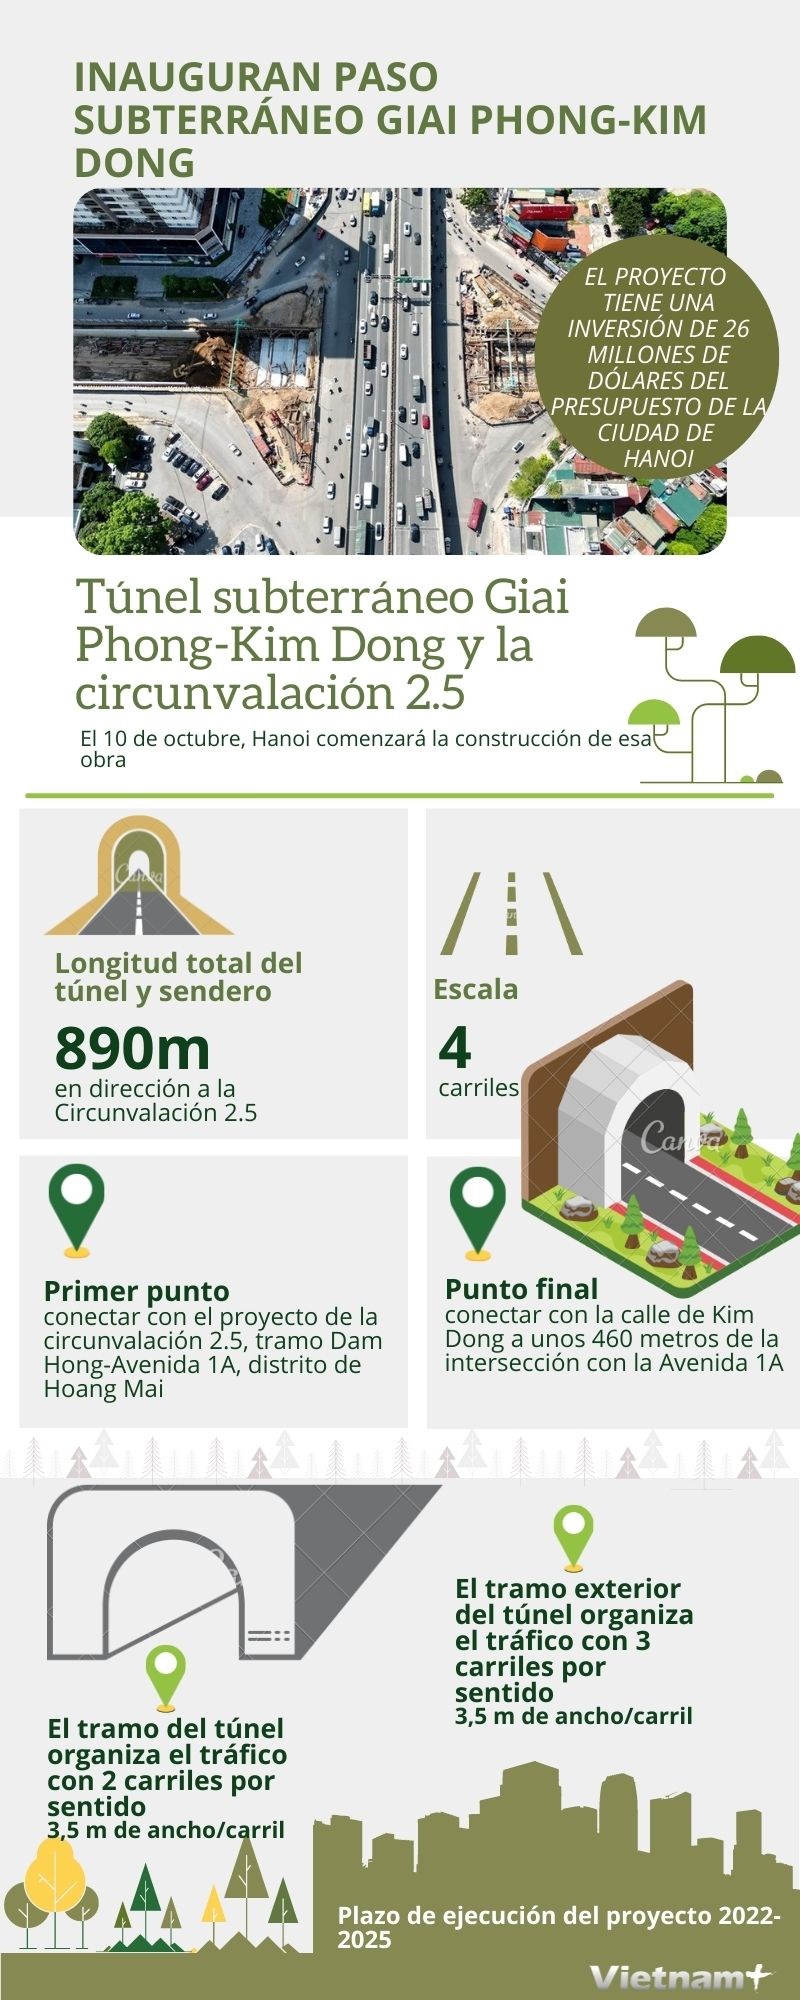 Inauguran paso subterraneo Giai Phong-Kim Dong hinh anh 1